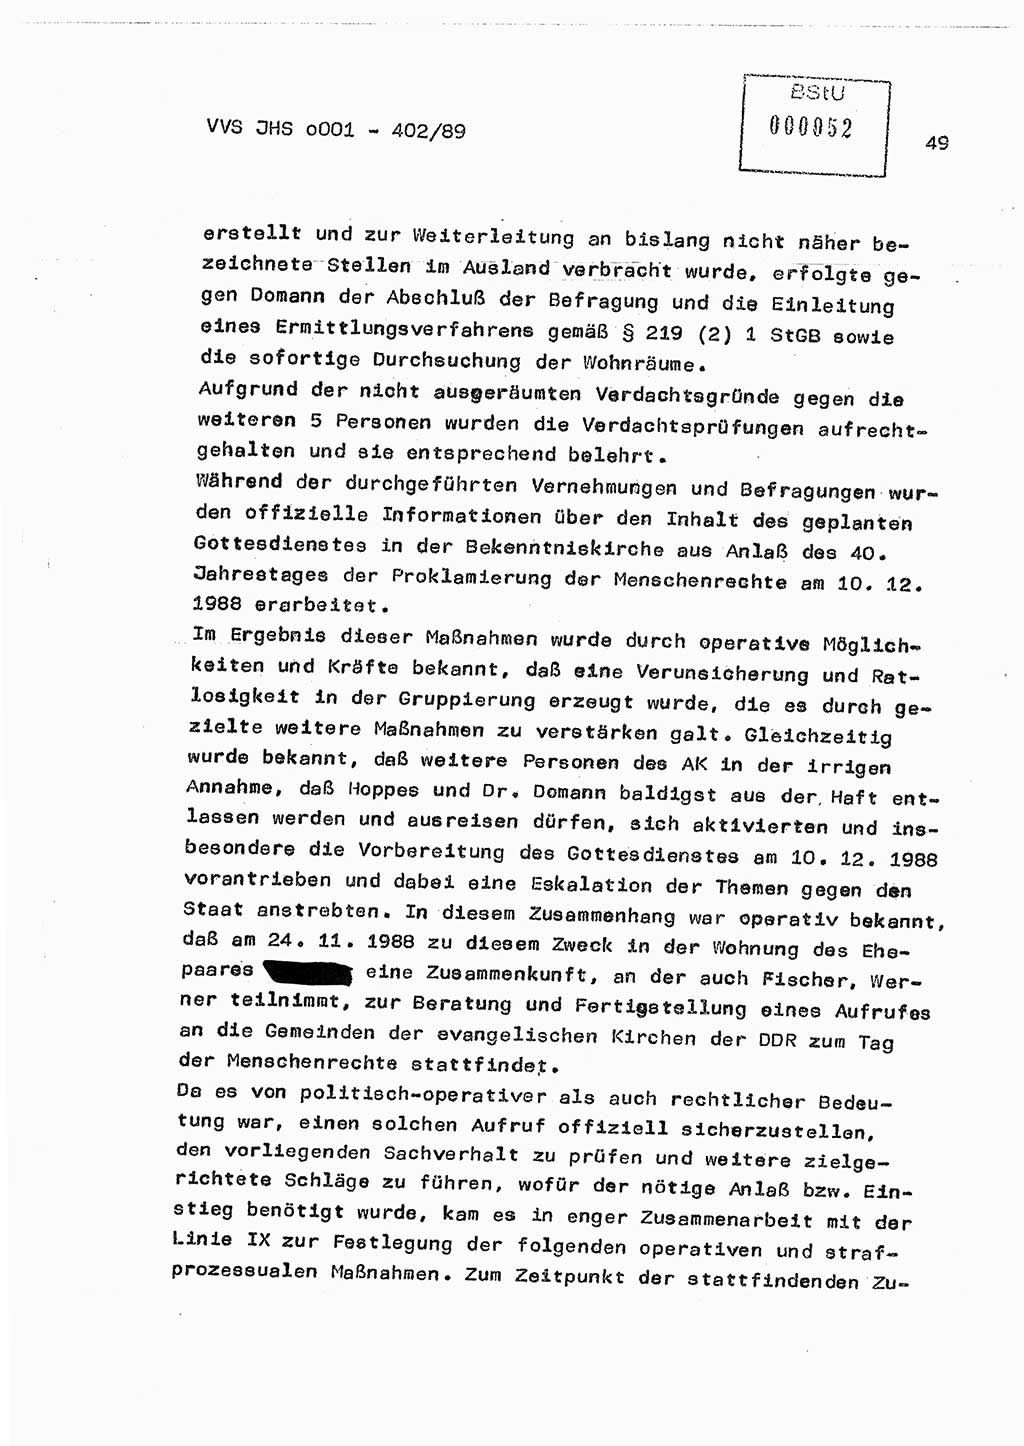 Diplomarbeit Major Günter Müller (HA Ⅸ/9), Ministerium für Staatssicherheit (MfS) [Deutsche Demokratische Republik (DDR)], Juristische Hochschule (JHS), Vertrauliche Verschlußsache (VVS) o001-402/89, Potsdam 1989, Seite 49 (Dipl.-Arb. MfS DDR JHS VVS o001-402/89 1989, S. 49)